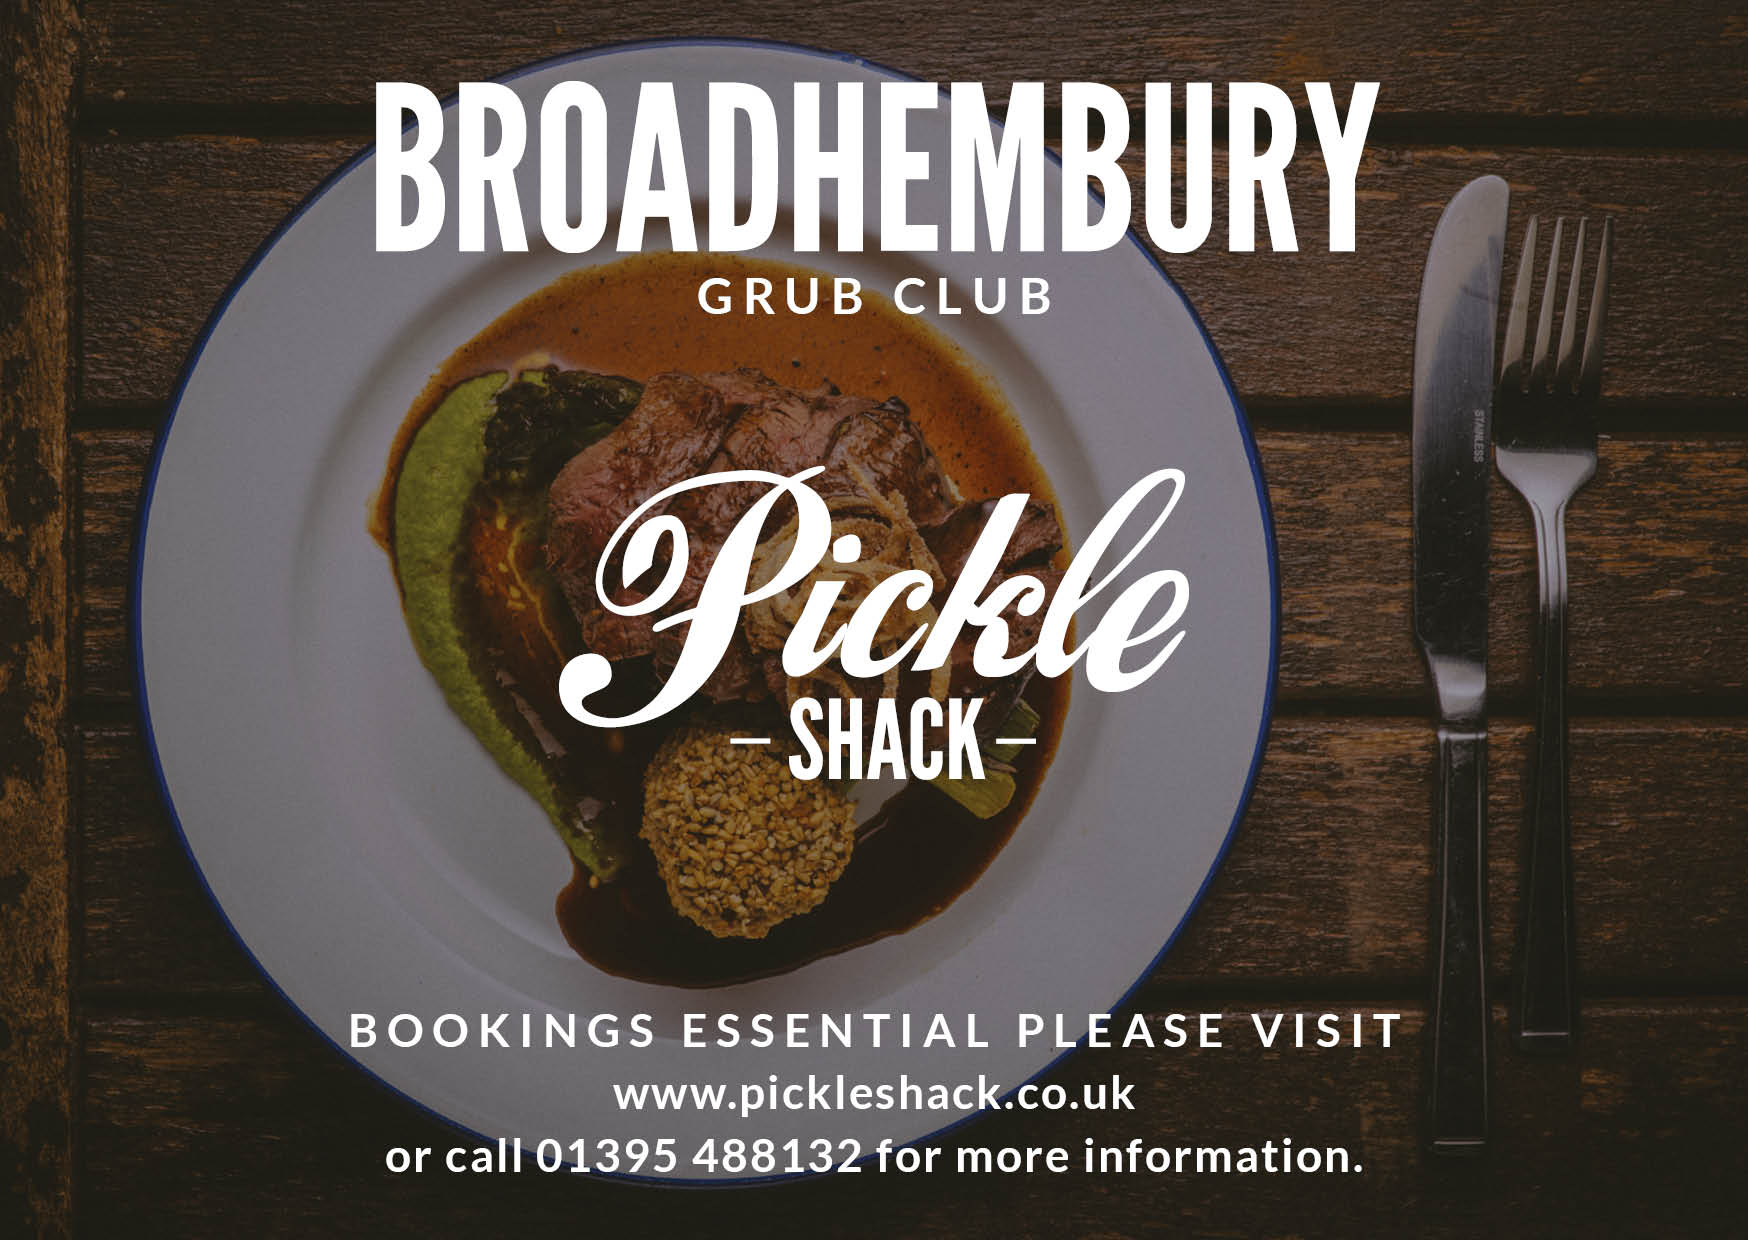 Broadhembury Grub Club